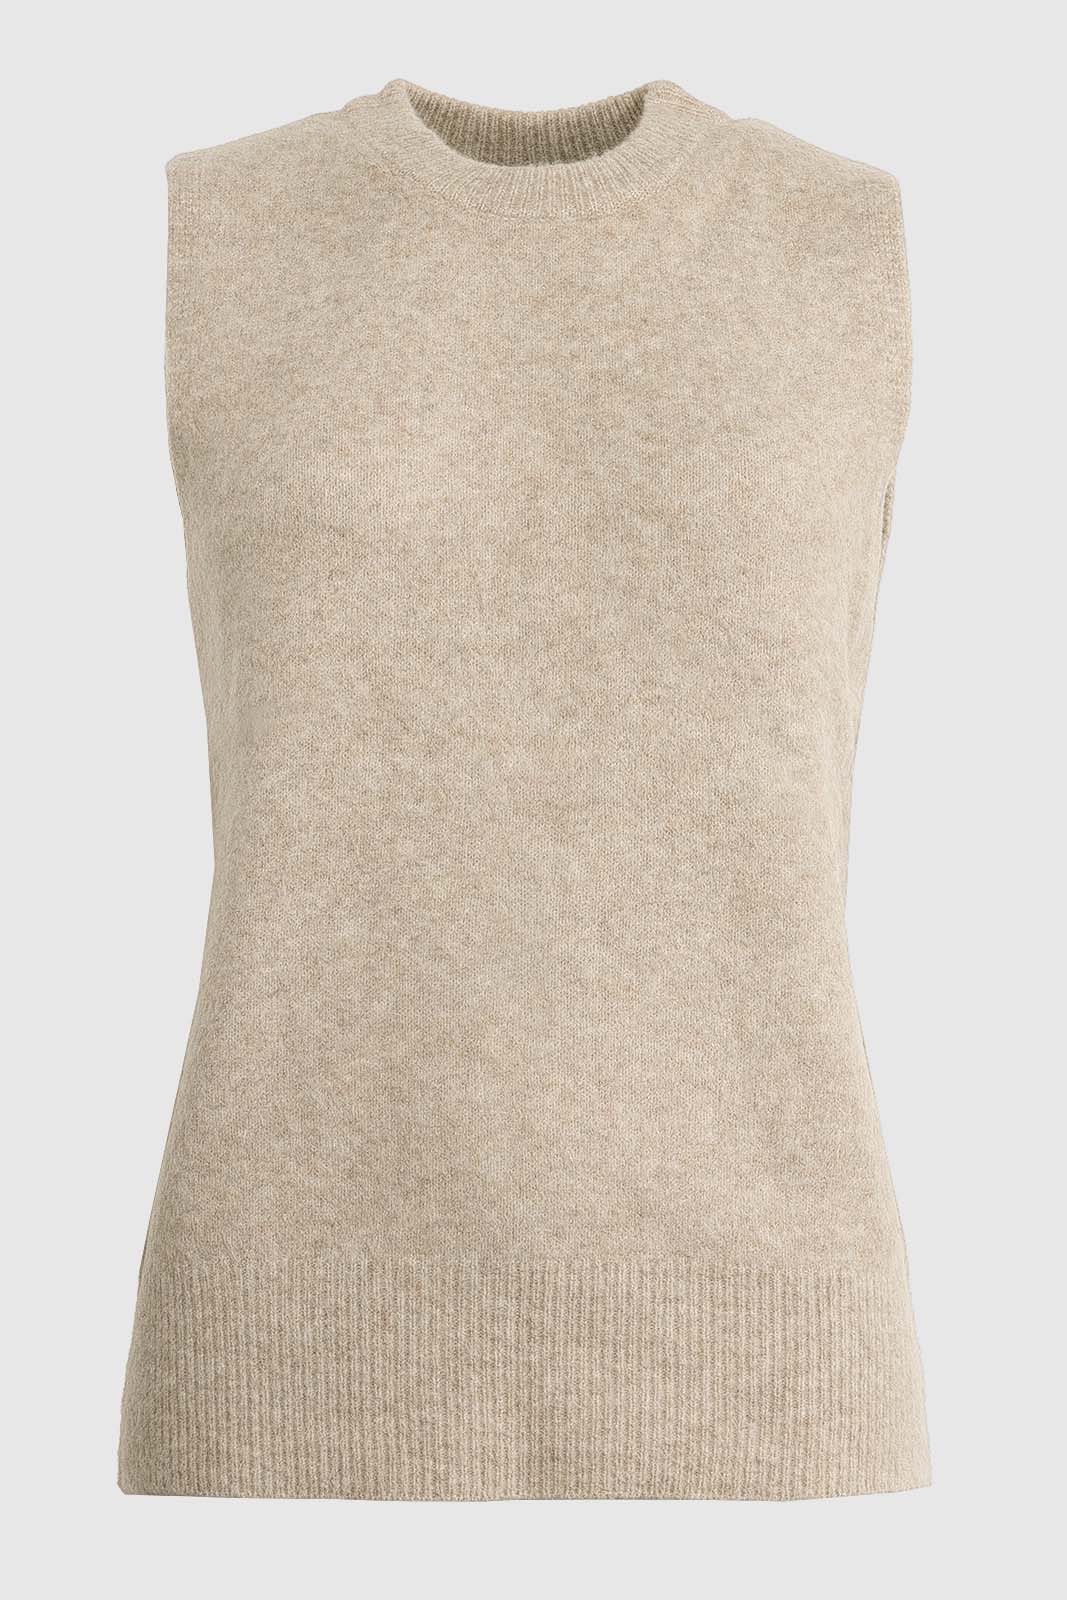 Betsie Knitted Wool Vest